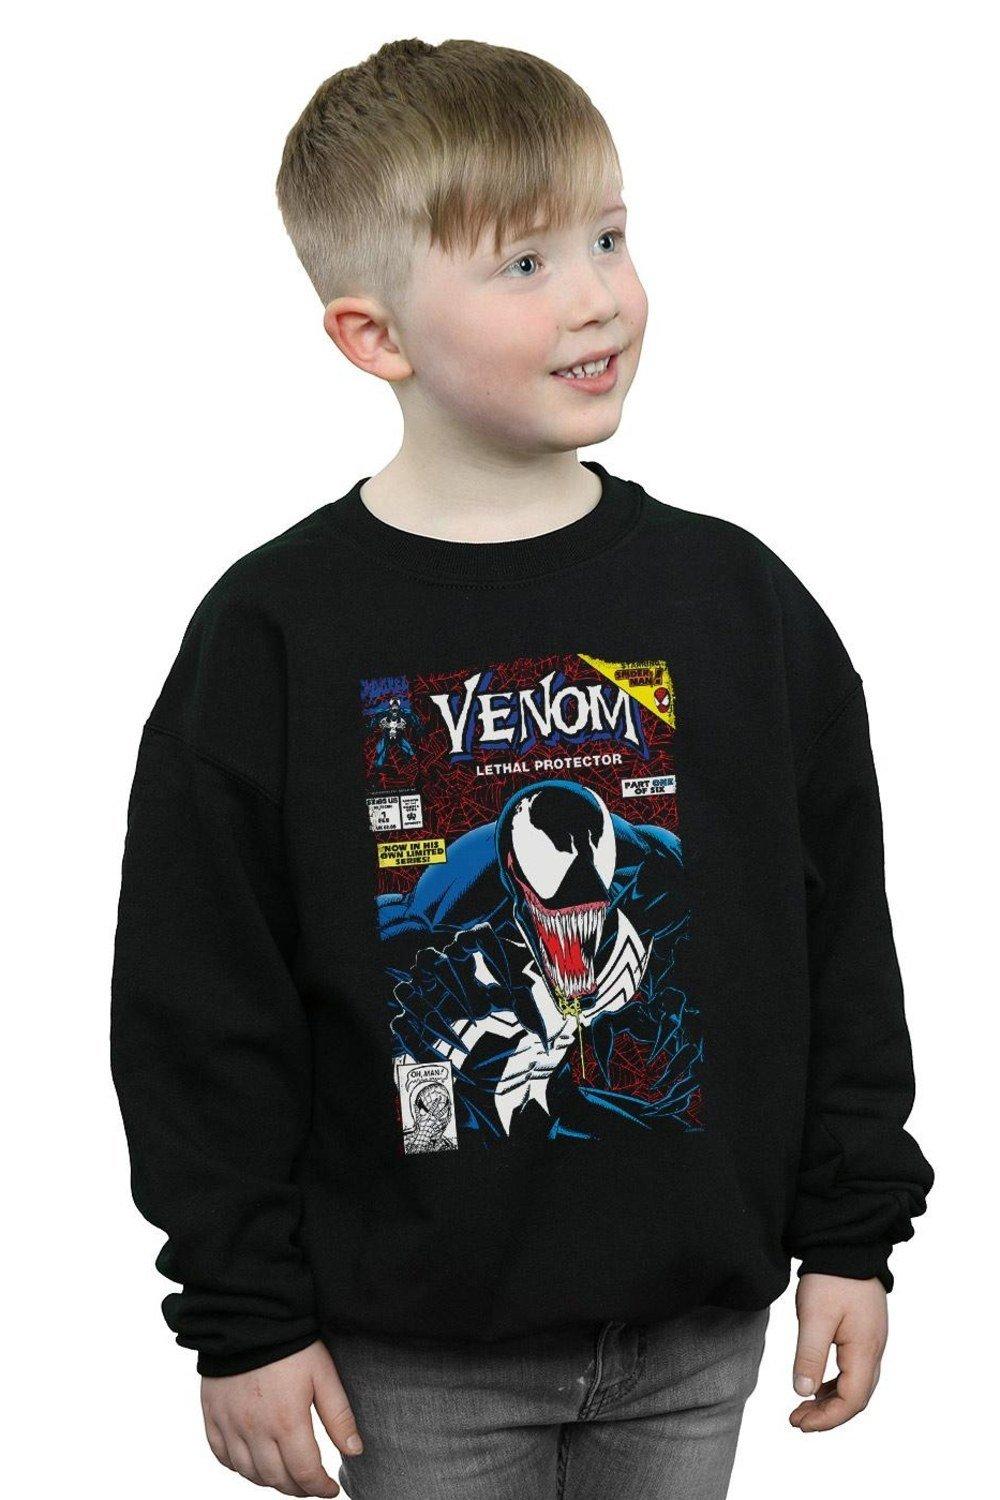 Venom Lethal Protector Sweatshirt